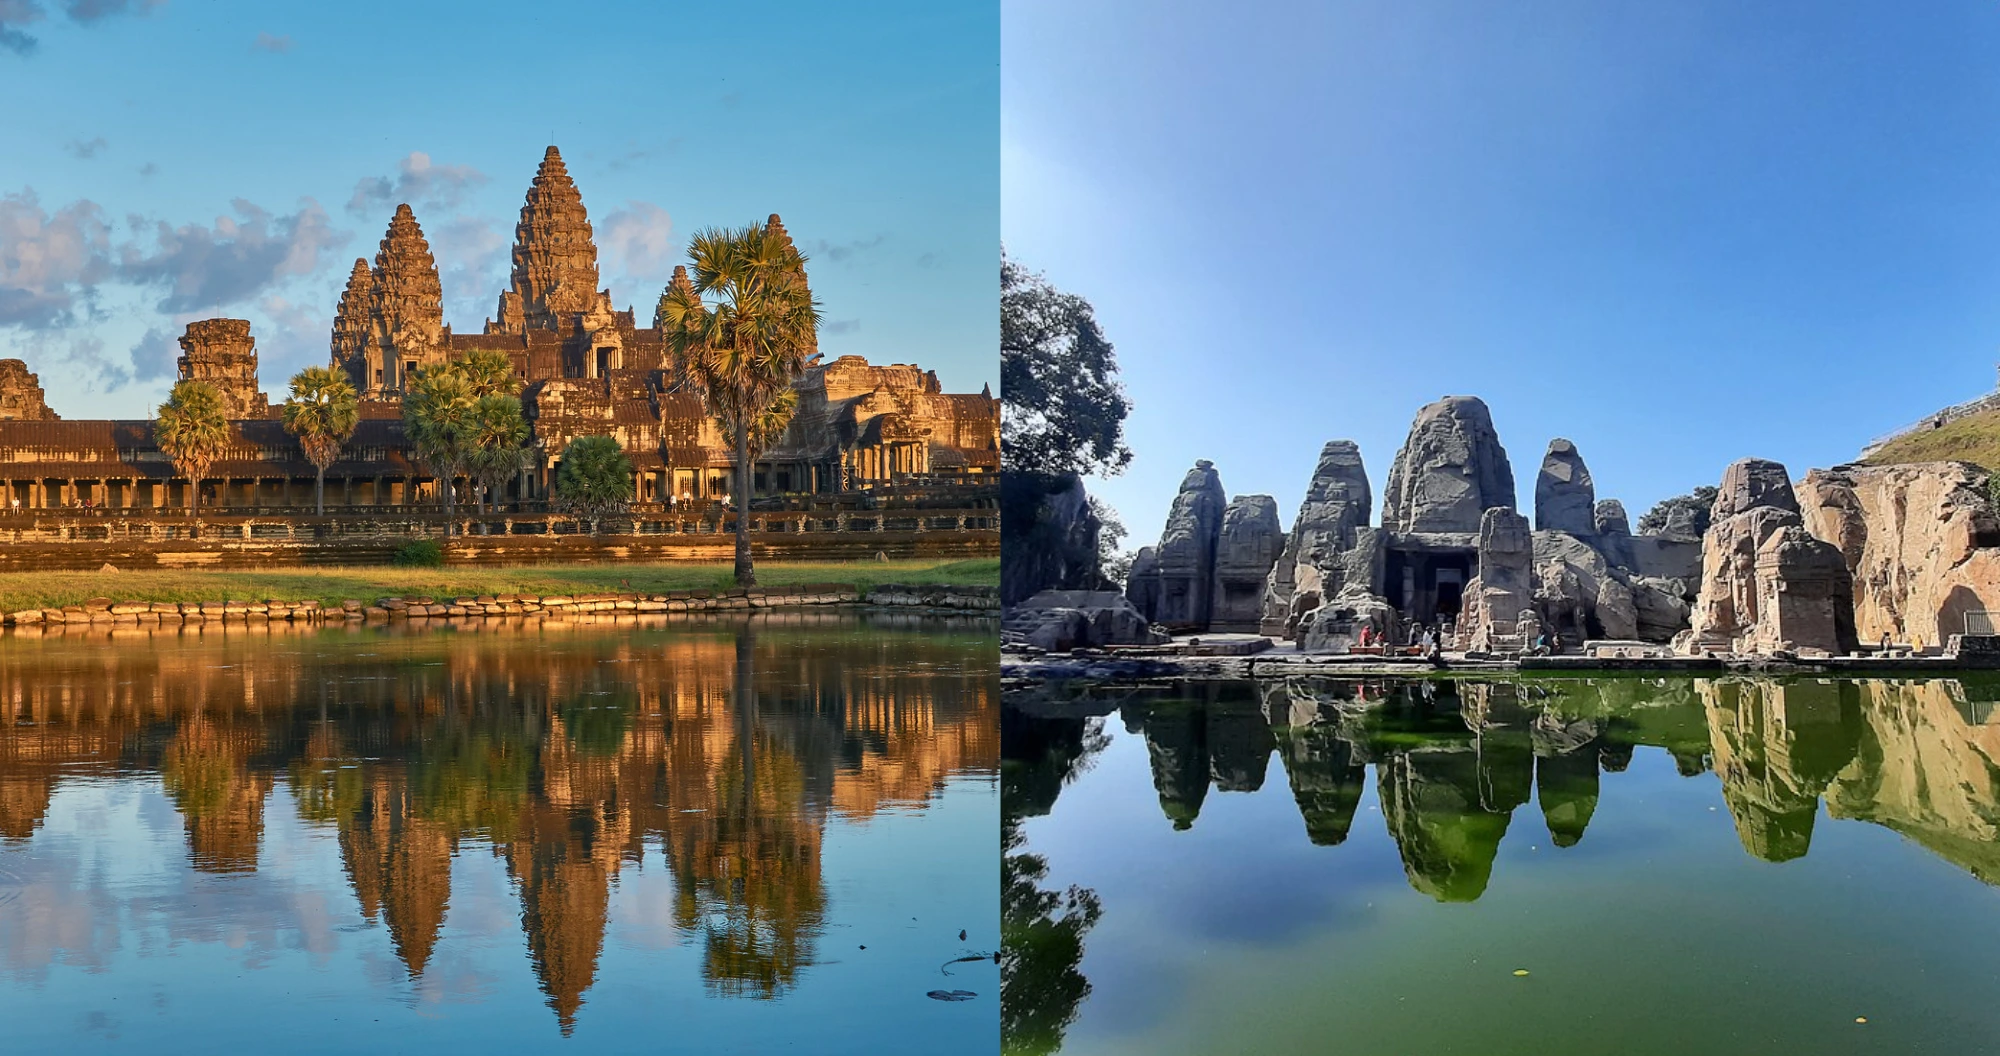 Angkor Wat and Masroor Temple